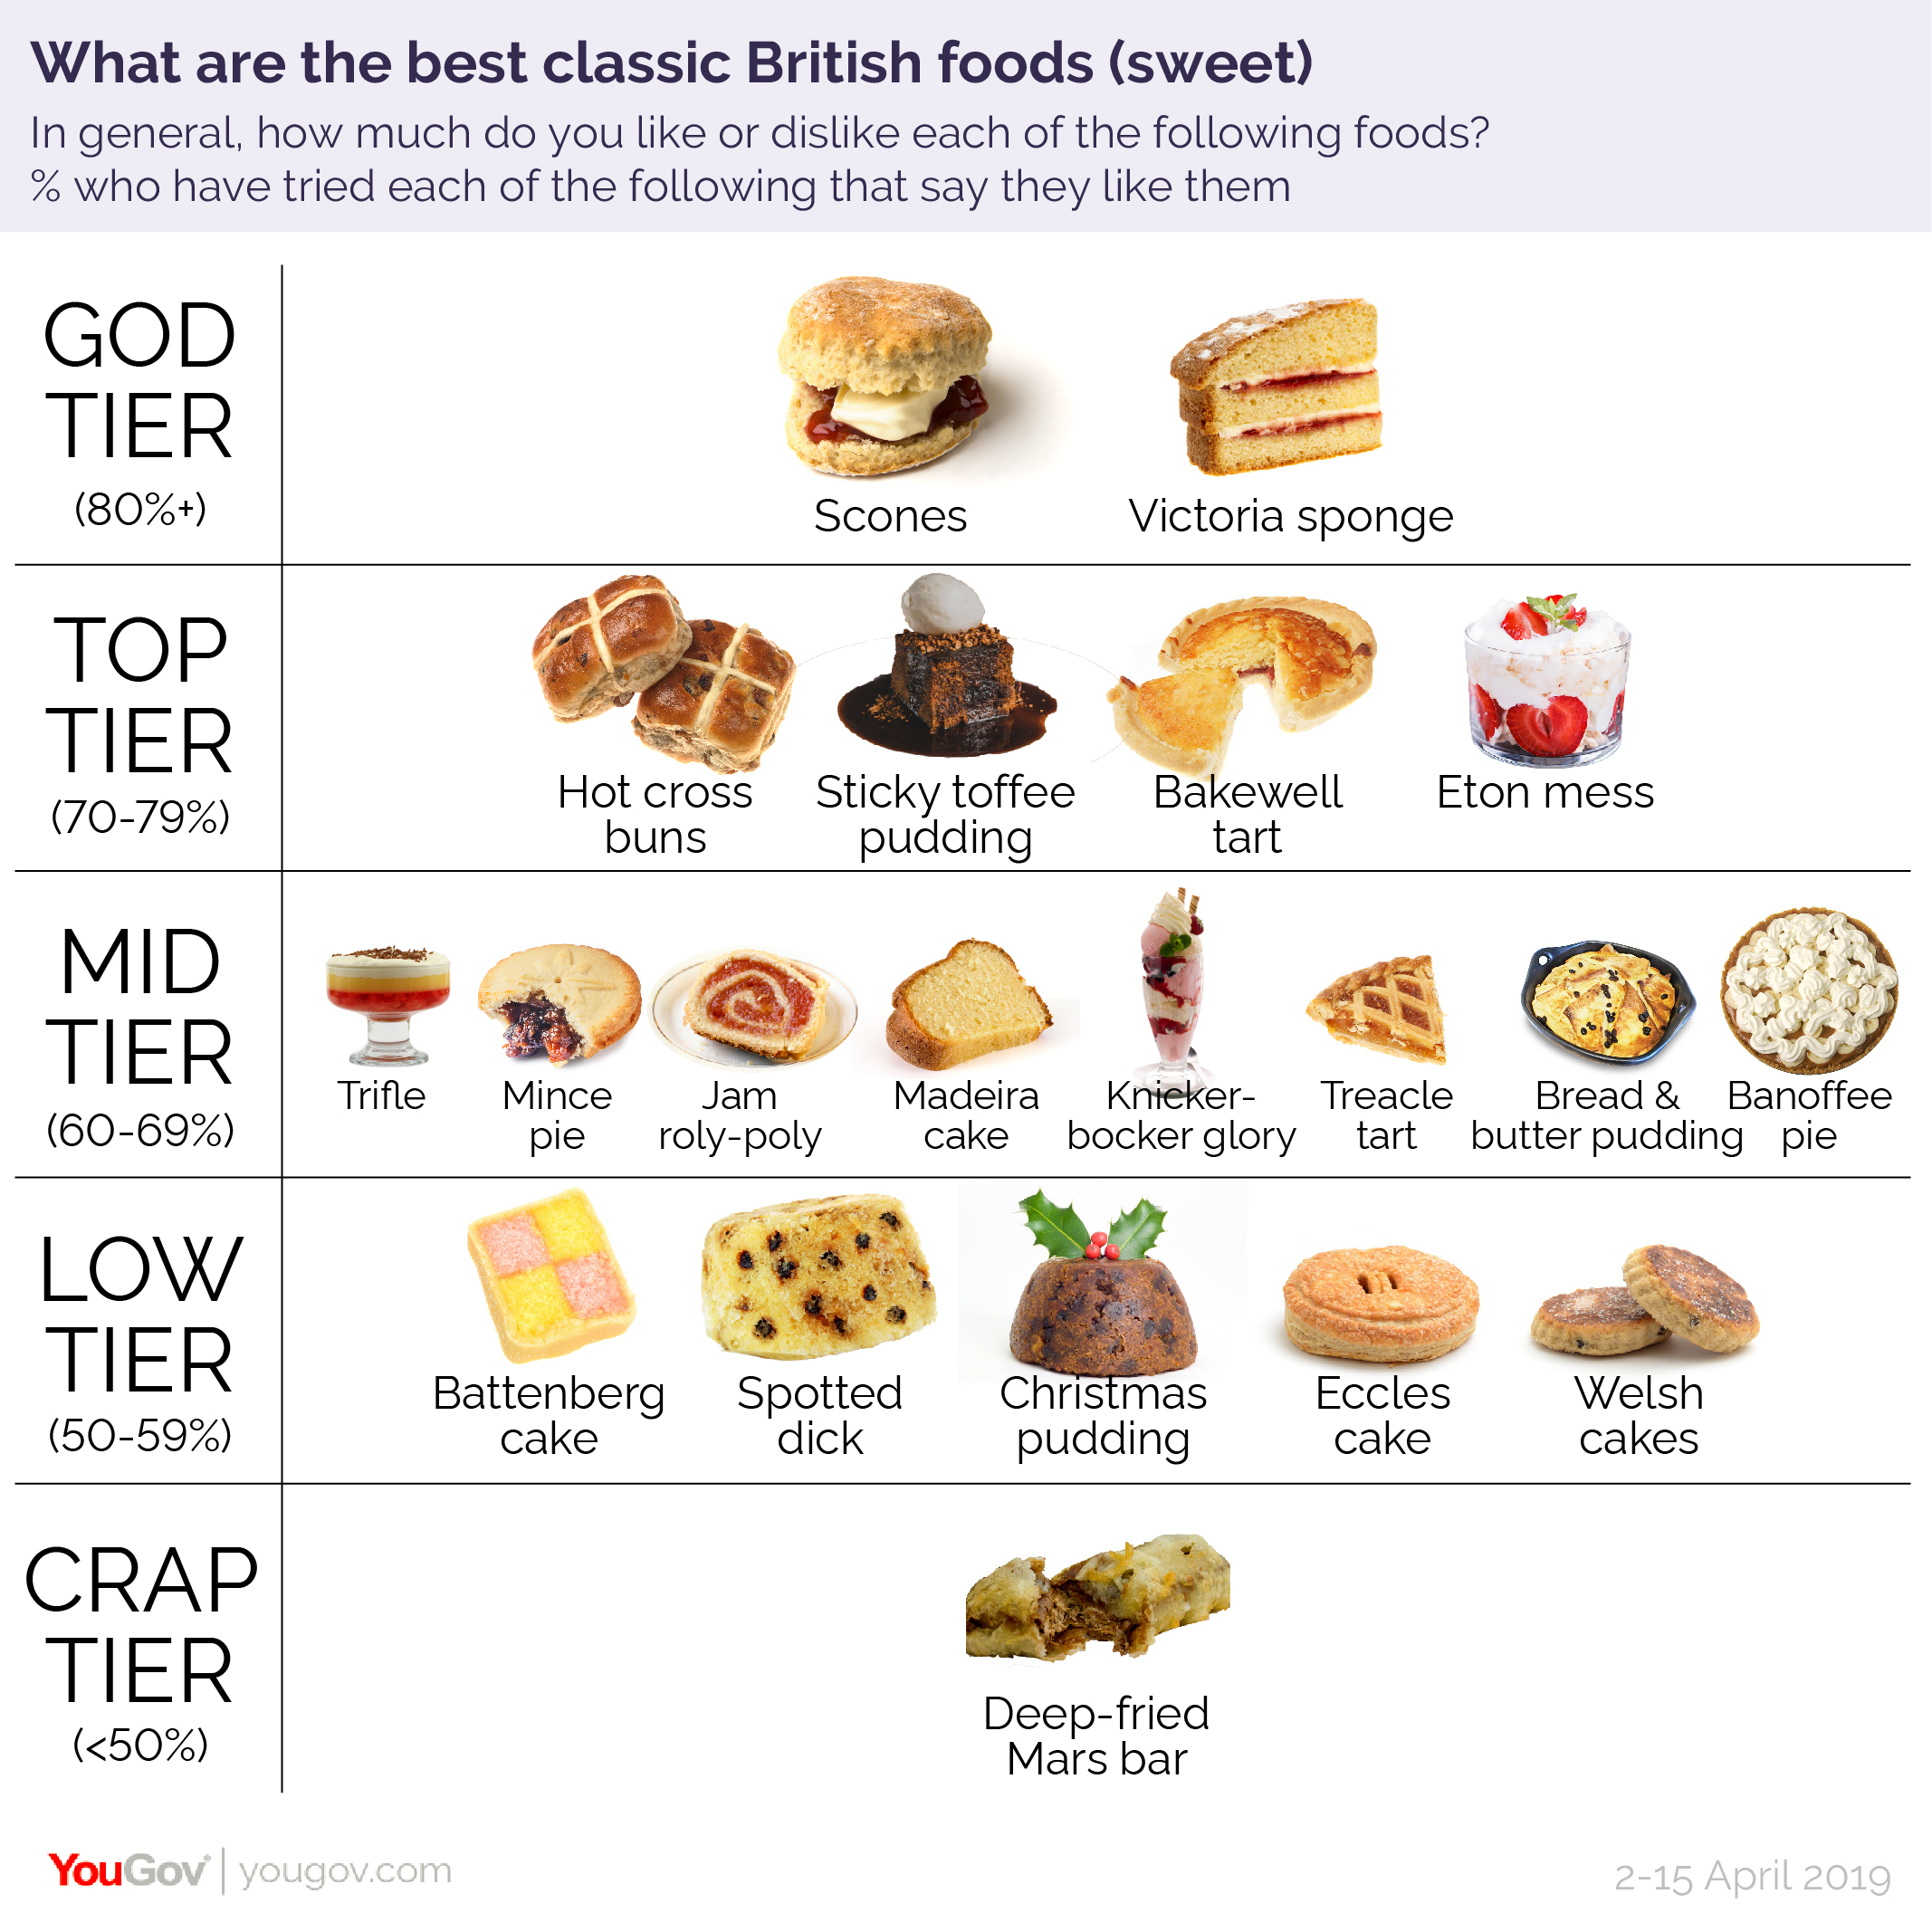 British Cuisine (sweet) 01 